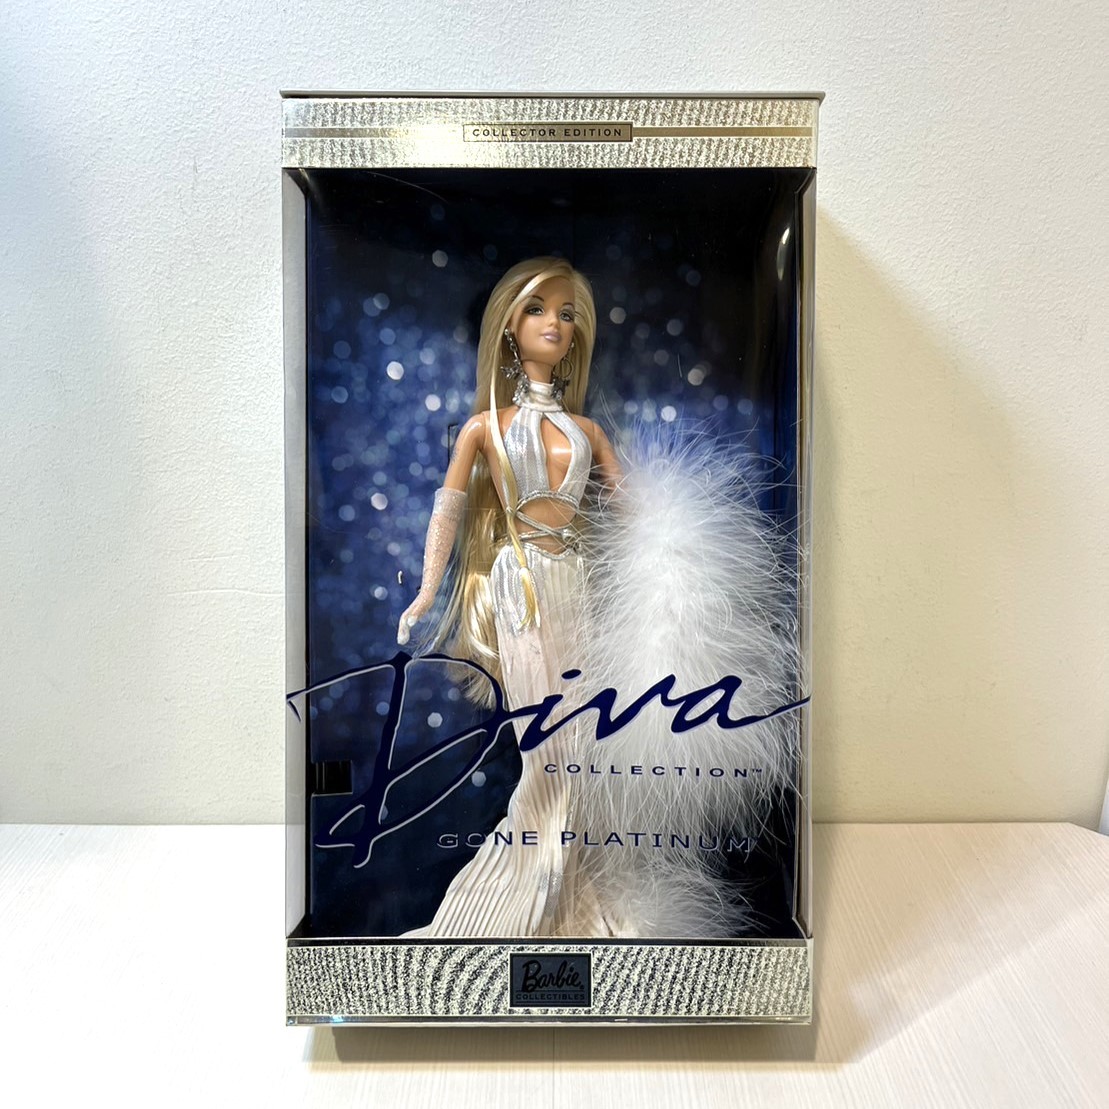 Mattel Barbie Diva COLLECTION GONE PLATINUMgo-n платина collector выпуск Barbie кукла очень редкий TL1605